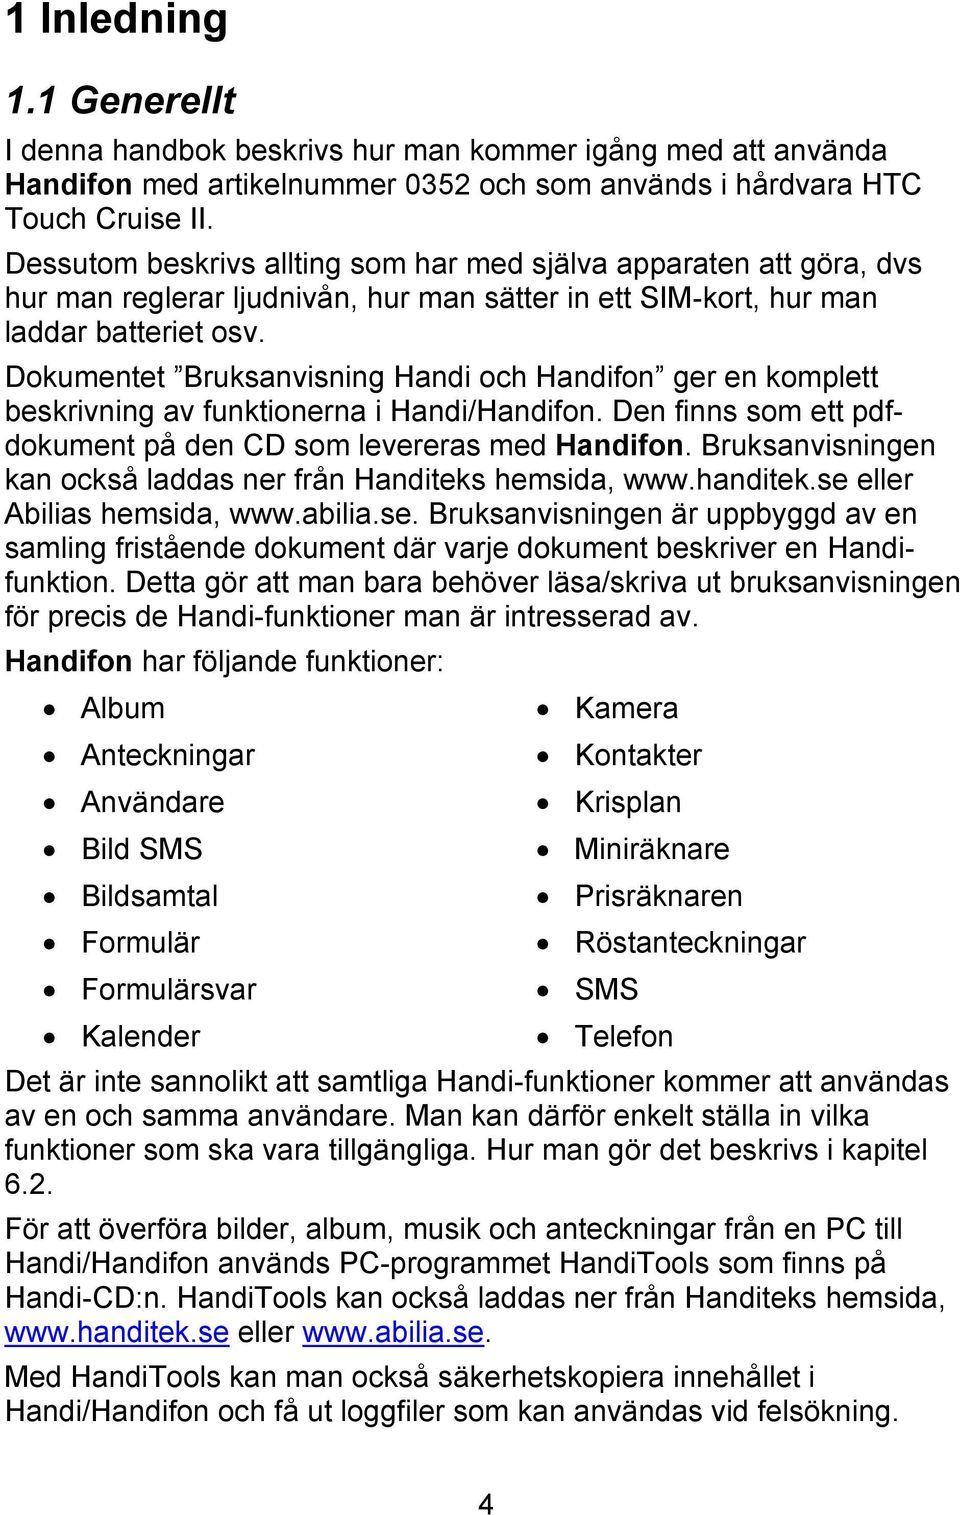 Dokumentet Bruksanvisning Handi och Handifon ger en komplett beskrivning av funktionerna i Handi/Handifon. Den finns som ett pdfdokument på den CD som levereras med Handifon.